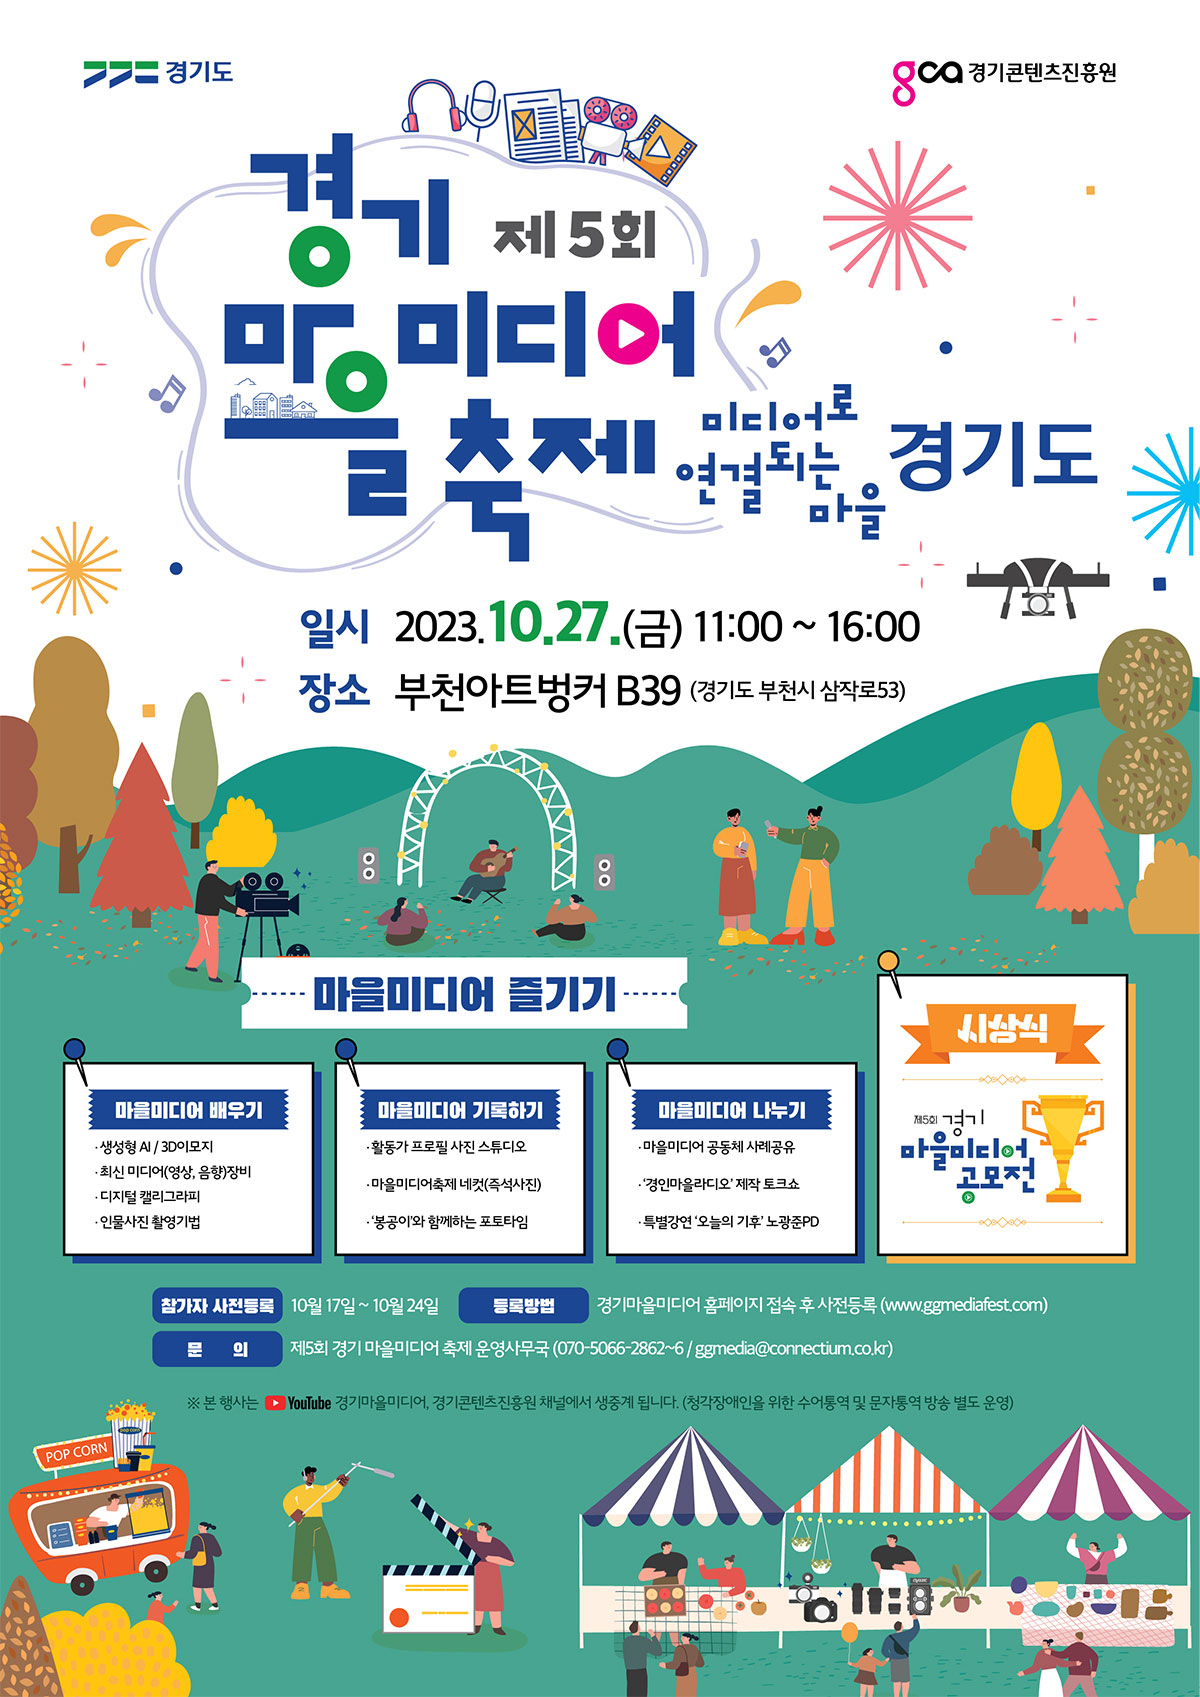 경기마을미디어축제 2023 공모전안내 포스터